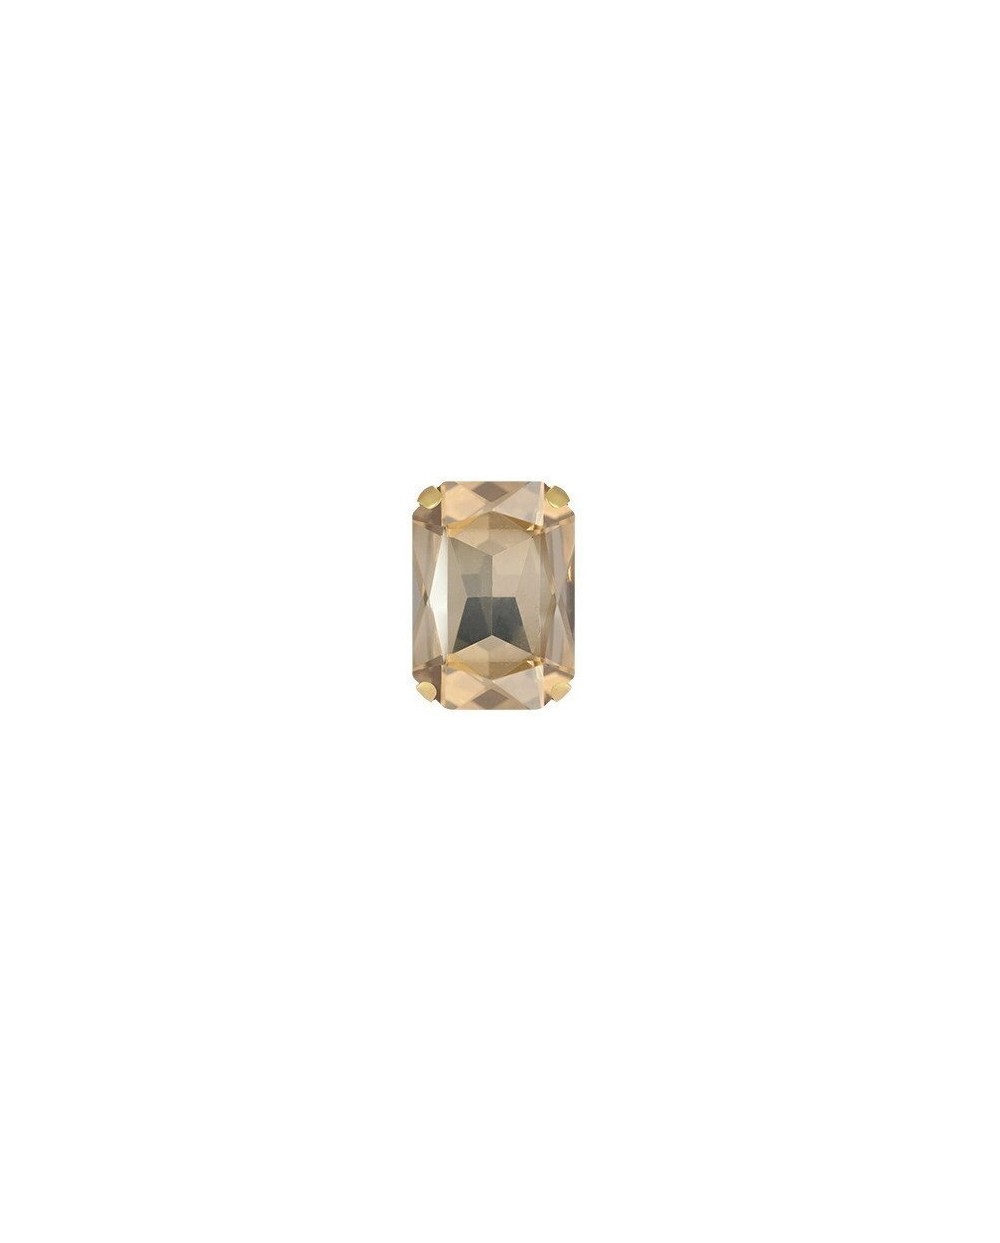 Stačiakampiai prisiuvami kristalai aukso sp., 10x14mm, 1 vnt.